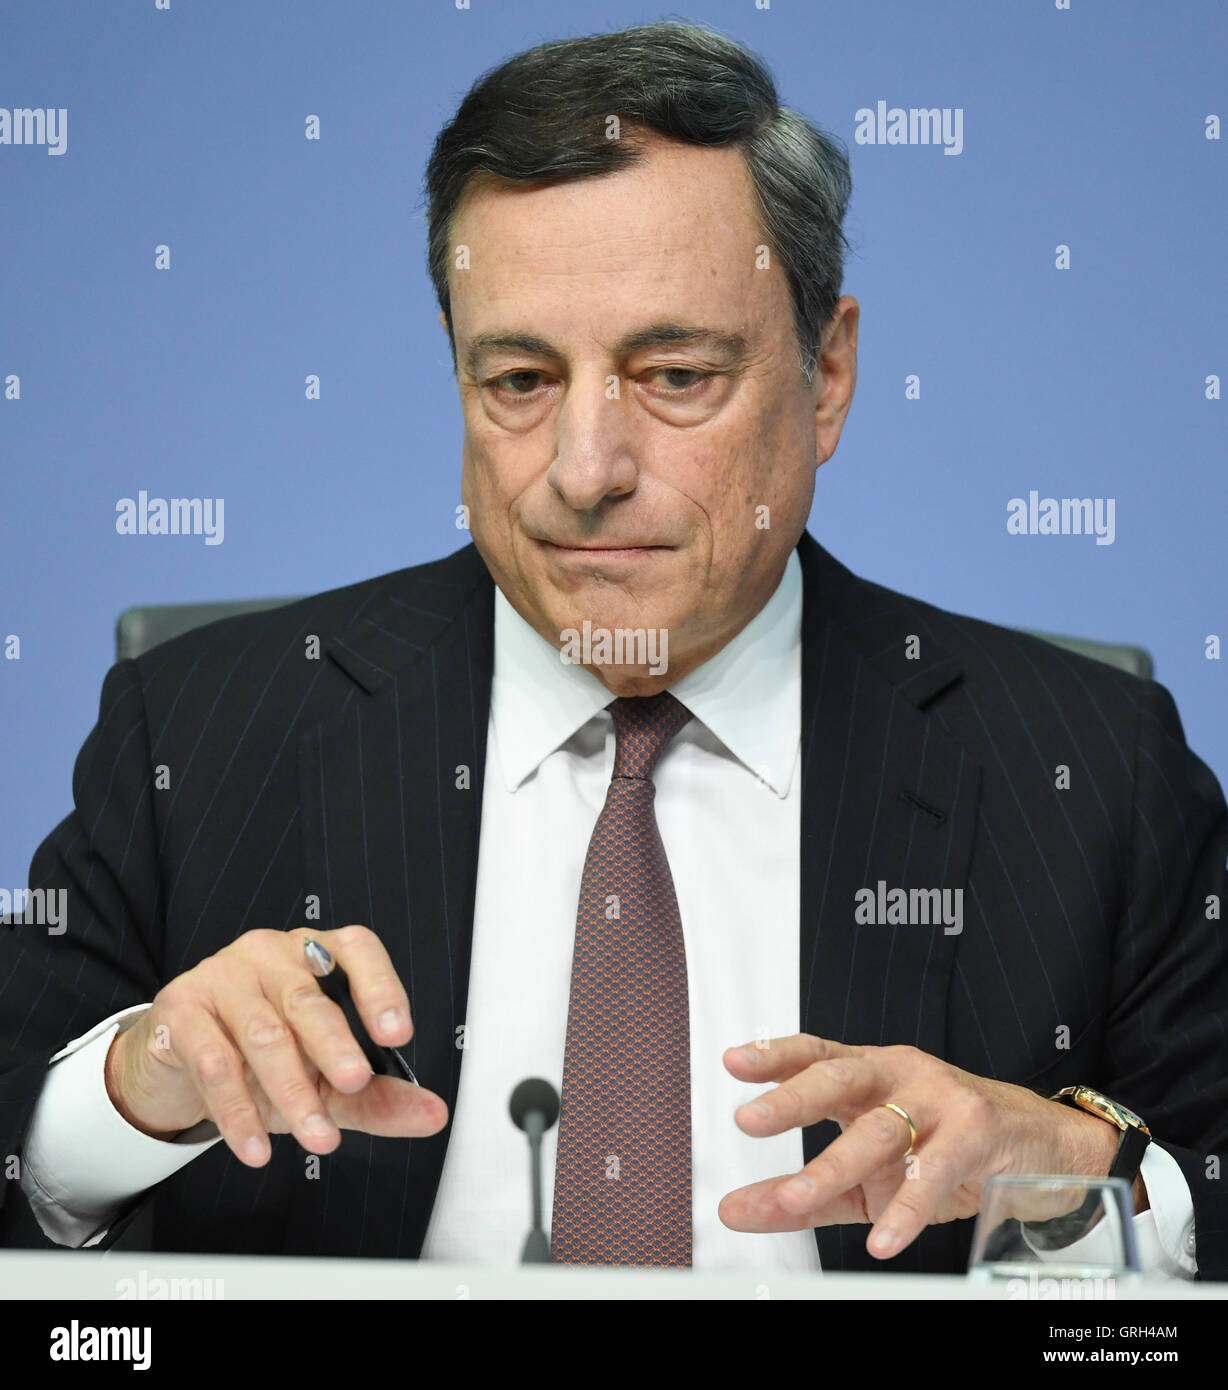 Mario Draghi, Président de la Banque centrale européenne (BCE), prend la parole à la conférence de presse de la BCE à Francfort am Main, Allemagne, 08 septembre 2016. Photo : ARNE DEDERT/dpa Banque D'Images